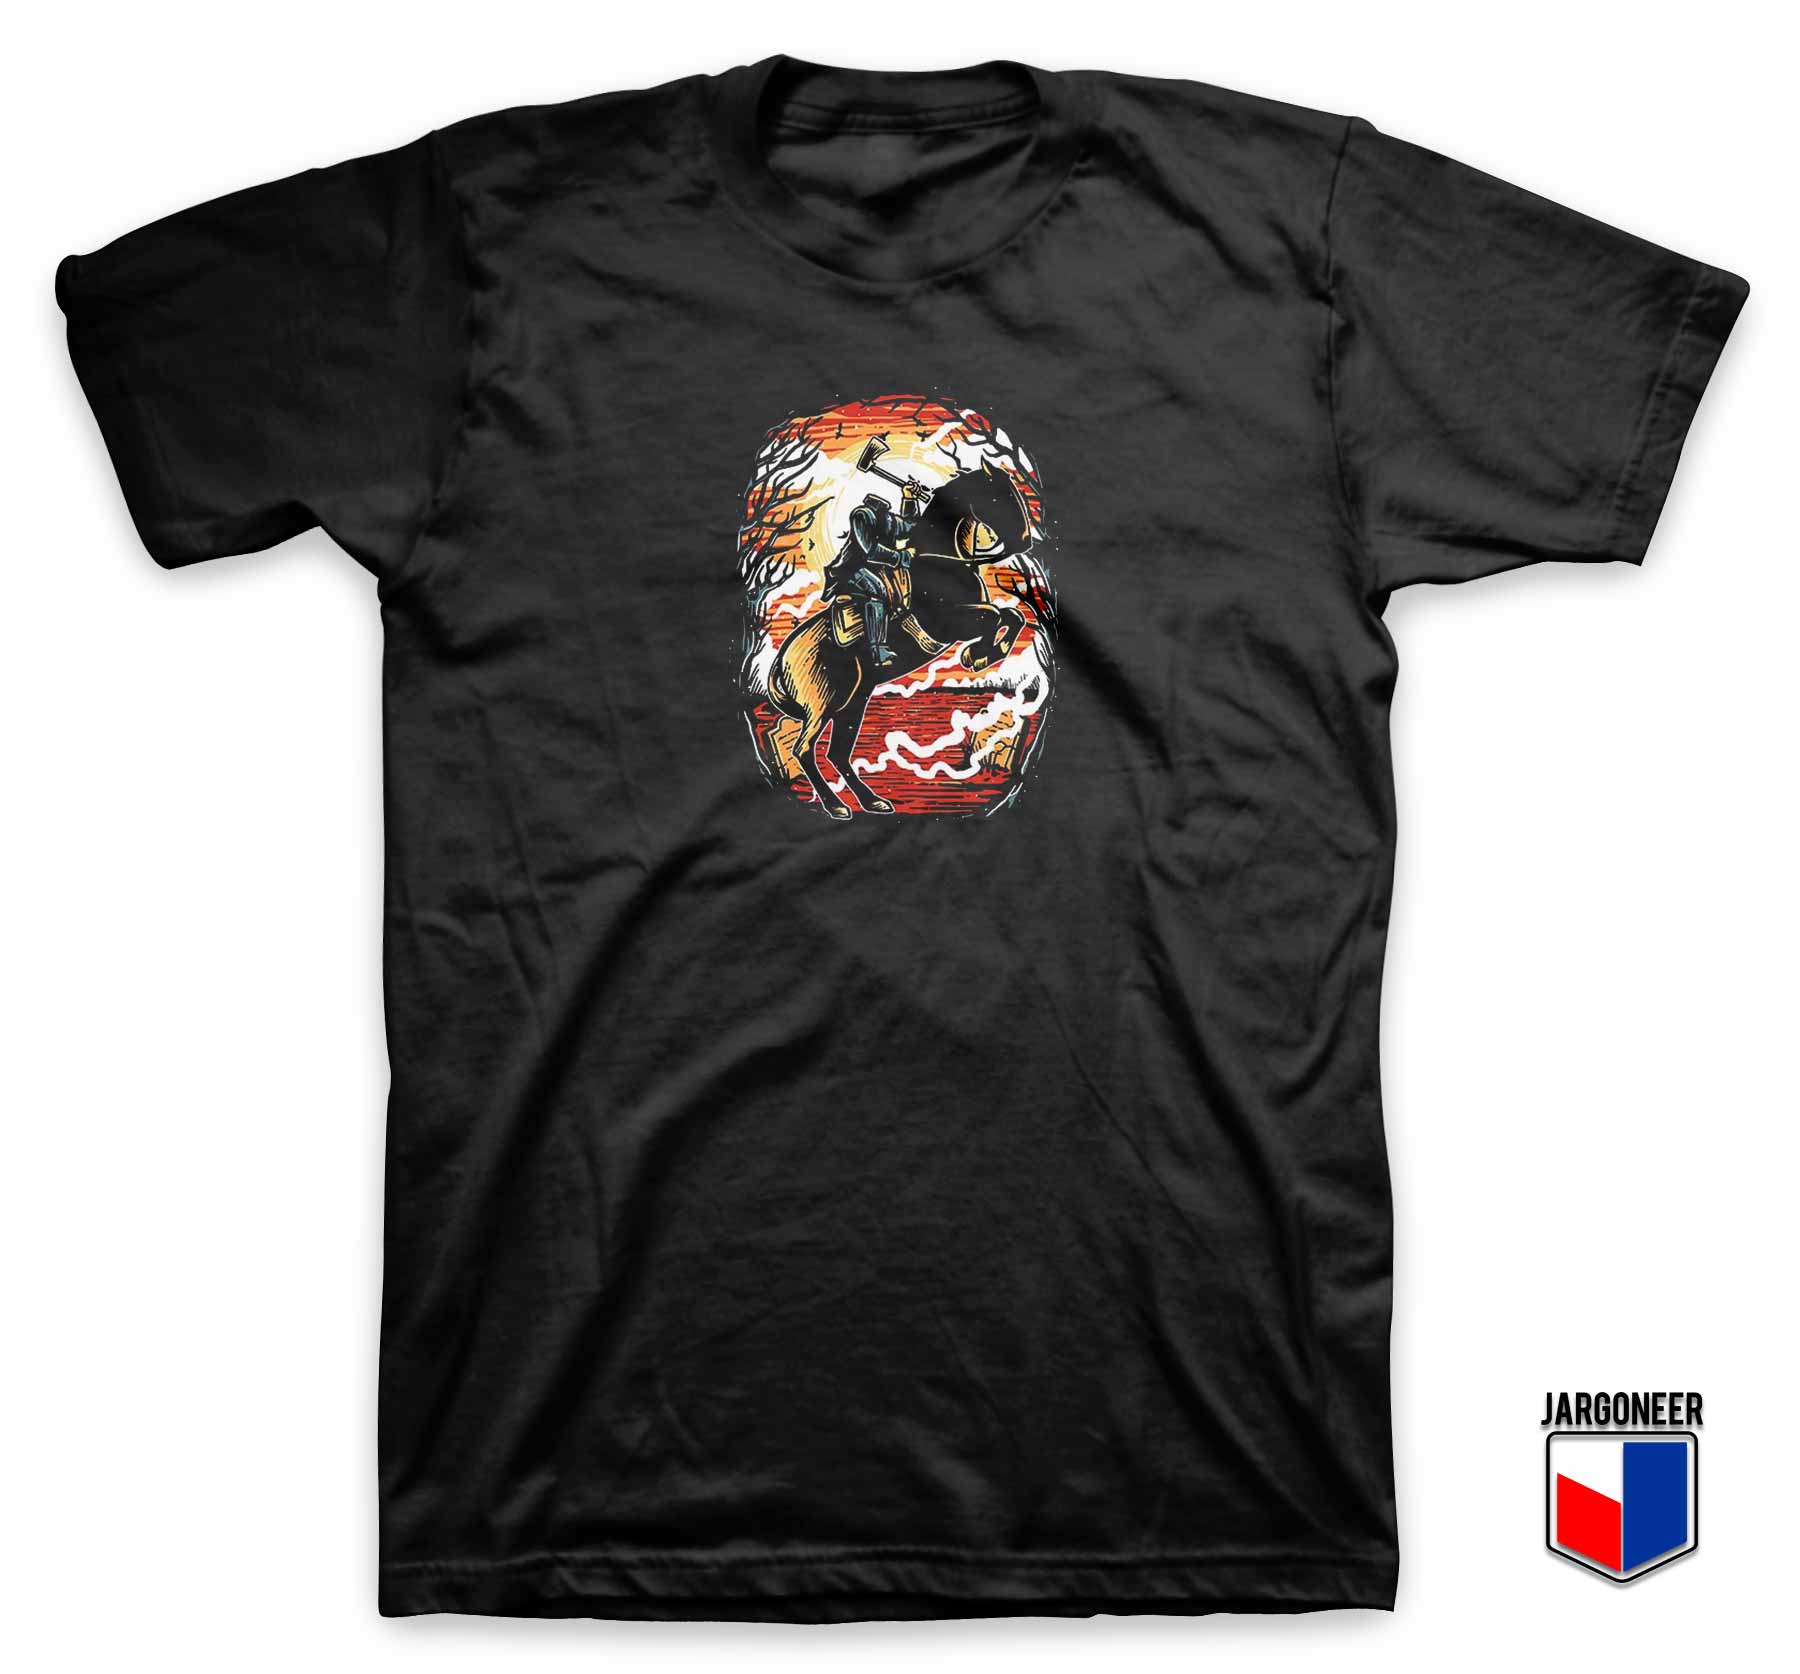 Headless Horseman 1 - Shop Unique Graphic Cool Shirt Designs